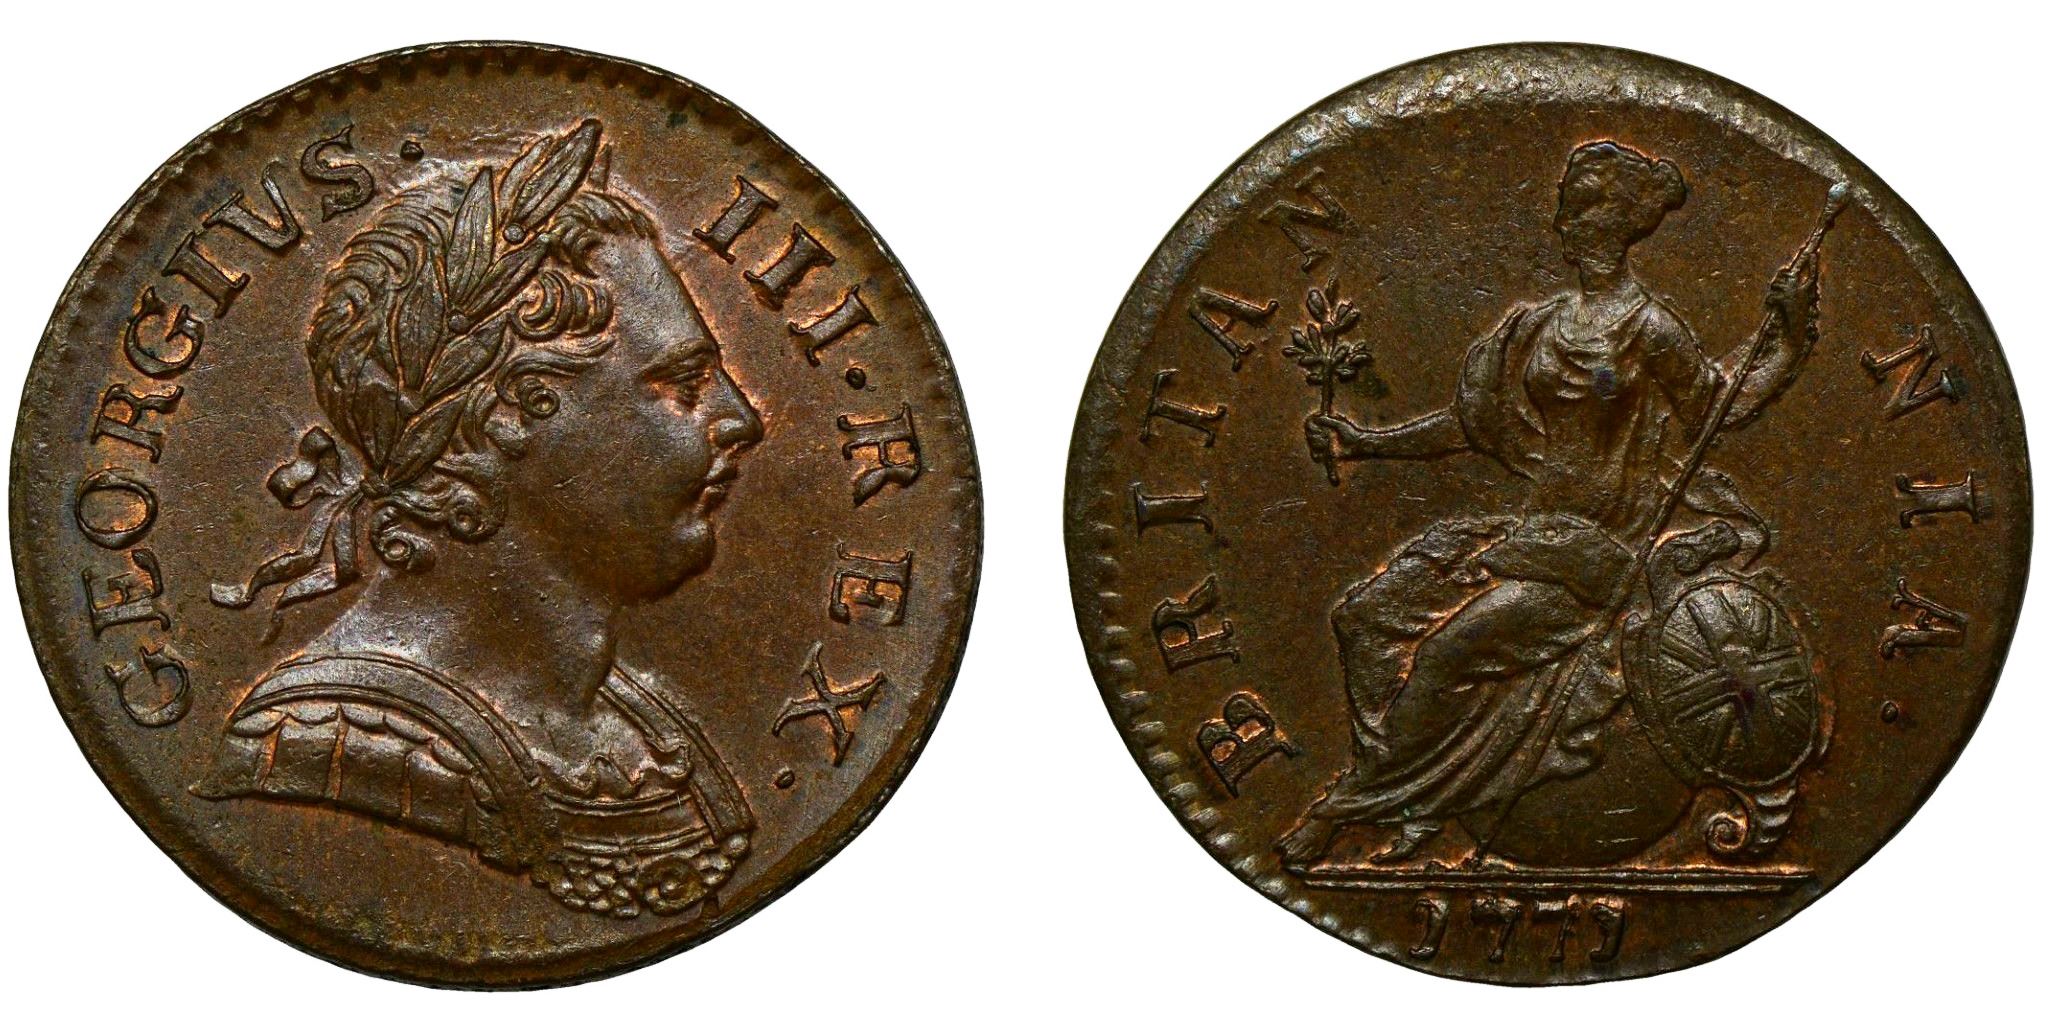 George III Copper Halfpenny 1771